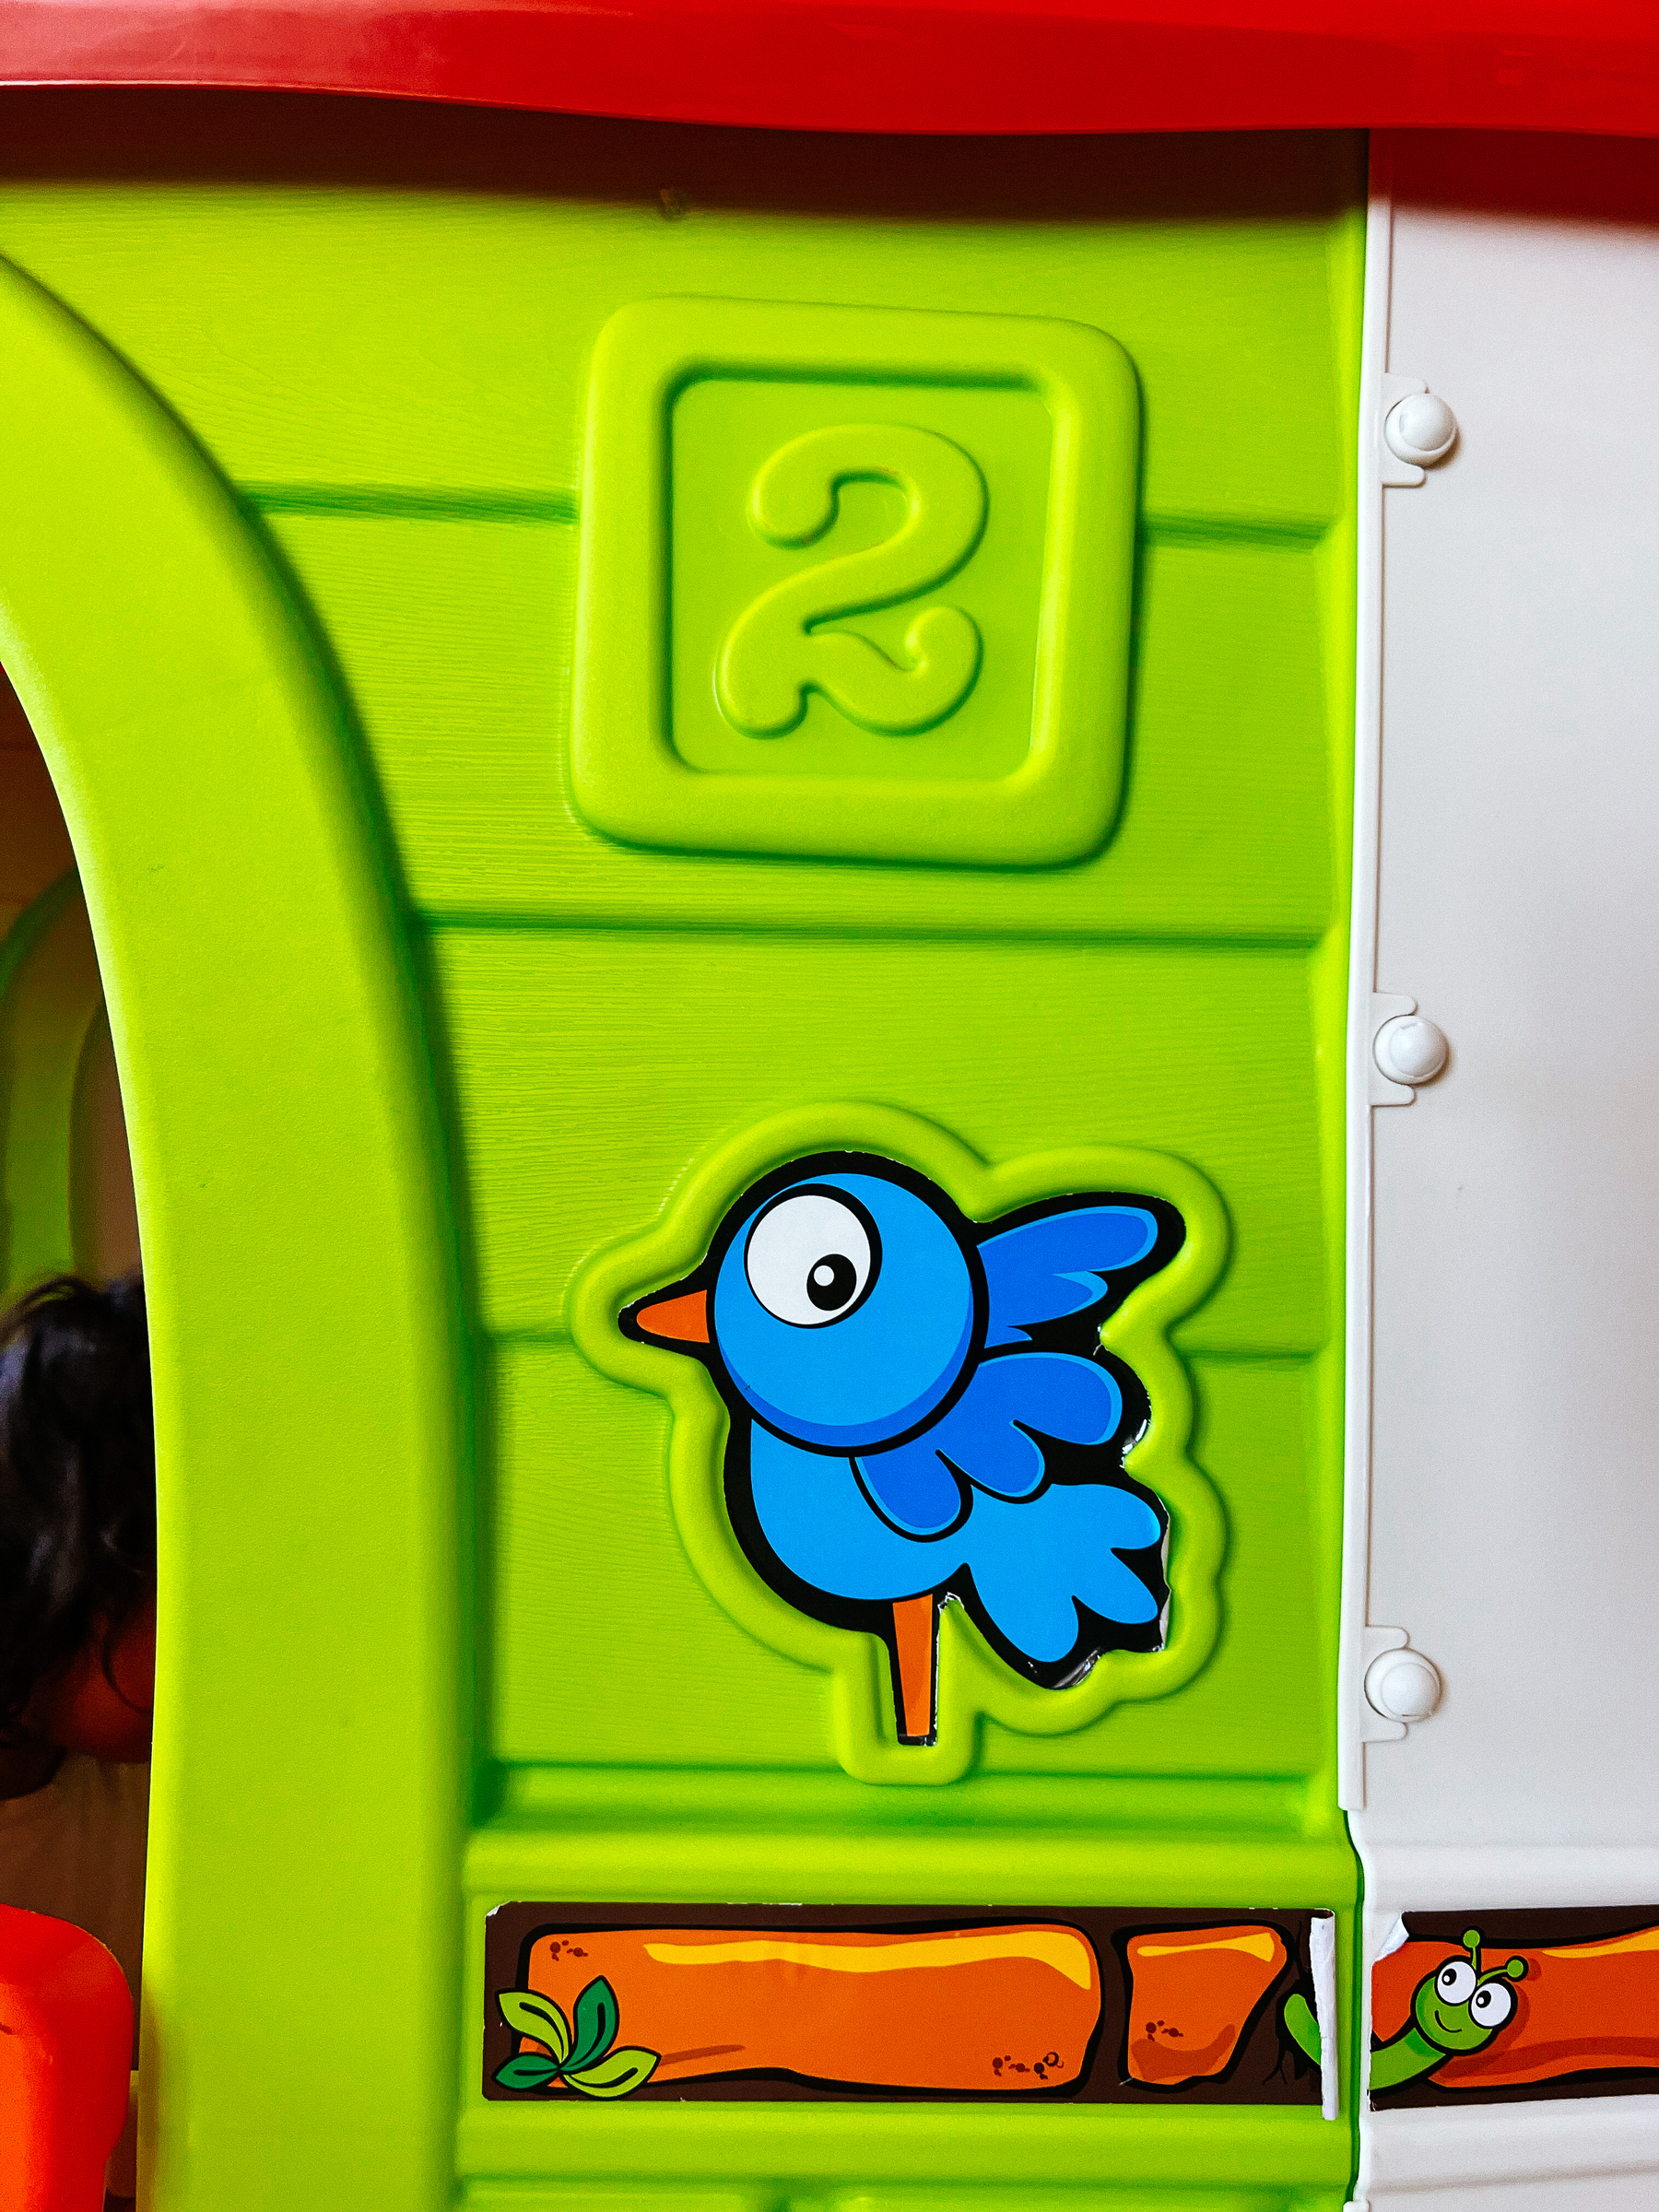 Sticker of a cartoon blue bird.